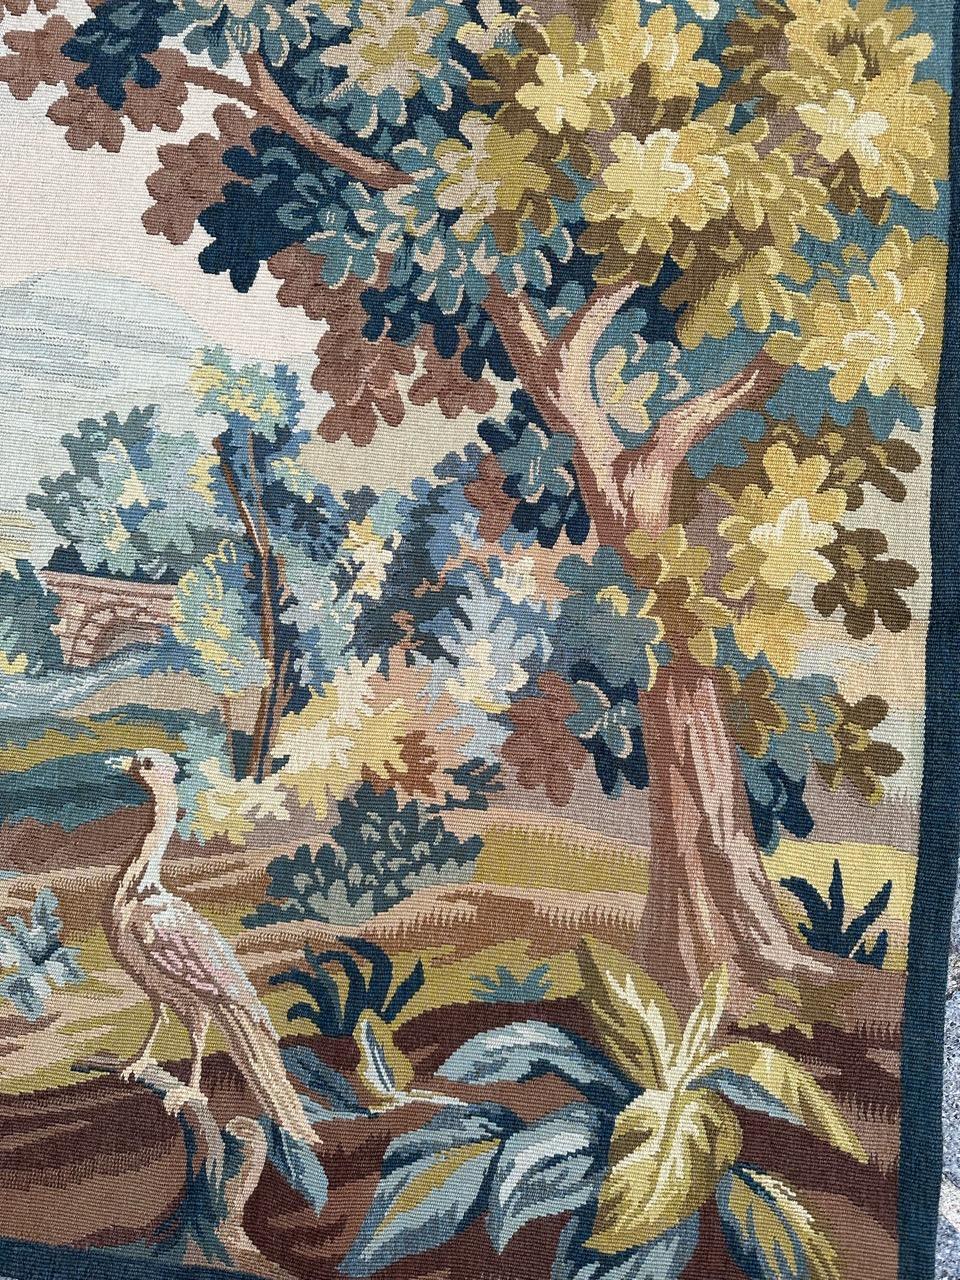 Belle tapisserie d'Aubusson vintage avec un beau design d'une tapisserie du 18ème siècle, avec de belles couleurs, entièrement tissée à la main avec de la laine et de la soie sur un fond de coton dans la manufacture Robert Four dans la ville